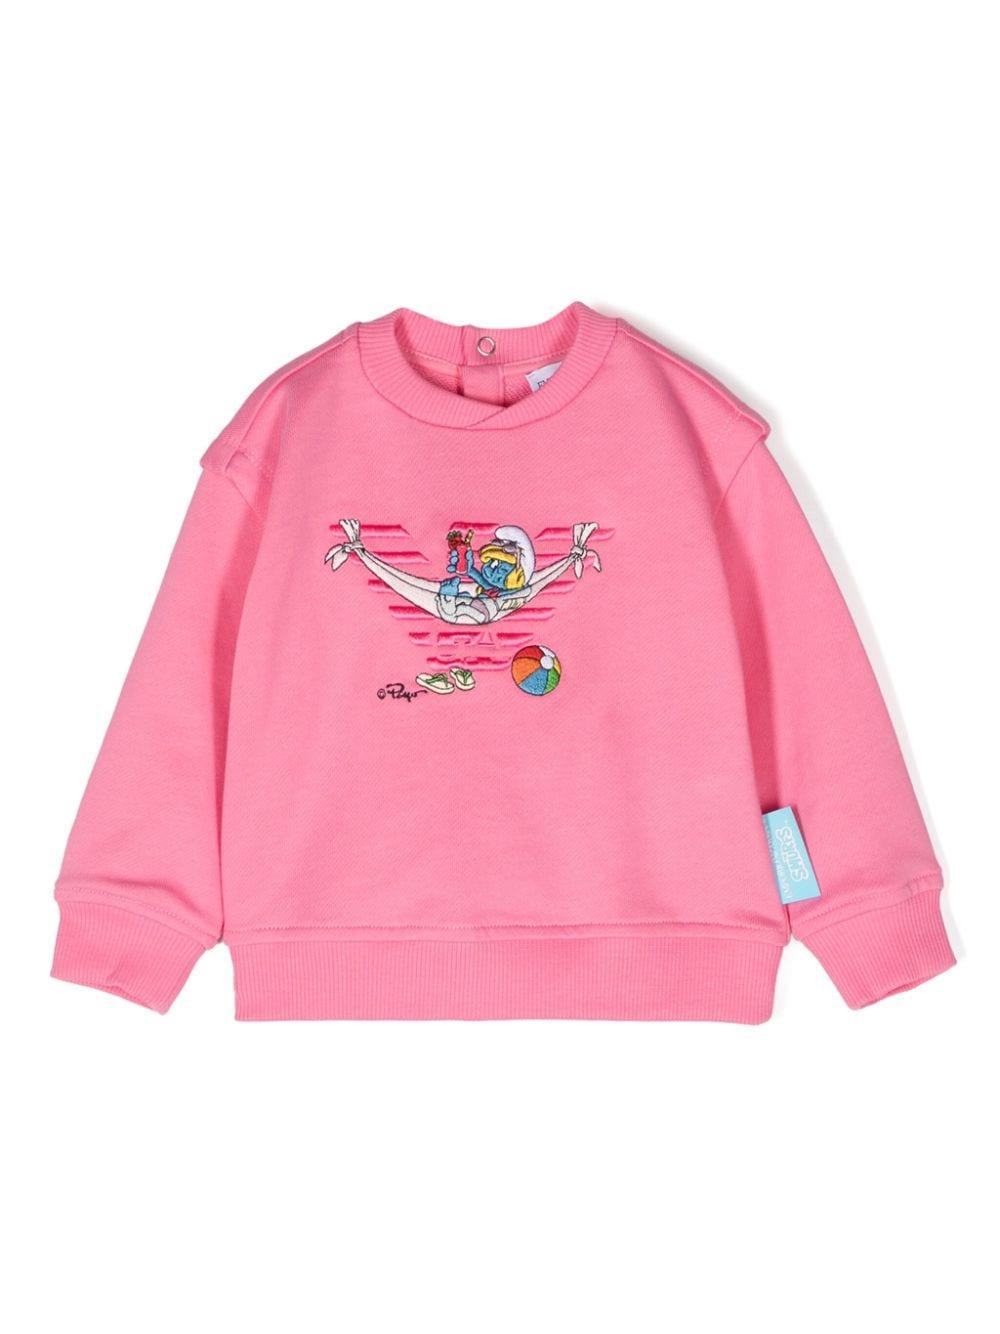 Emporio Armani Kids x The Smurfs embroidered sweatshirt - Pink von Emporio Armani Kids